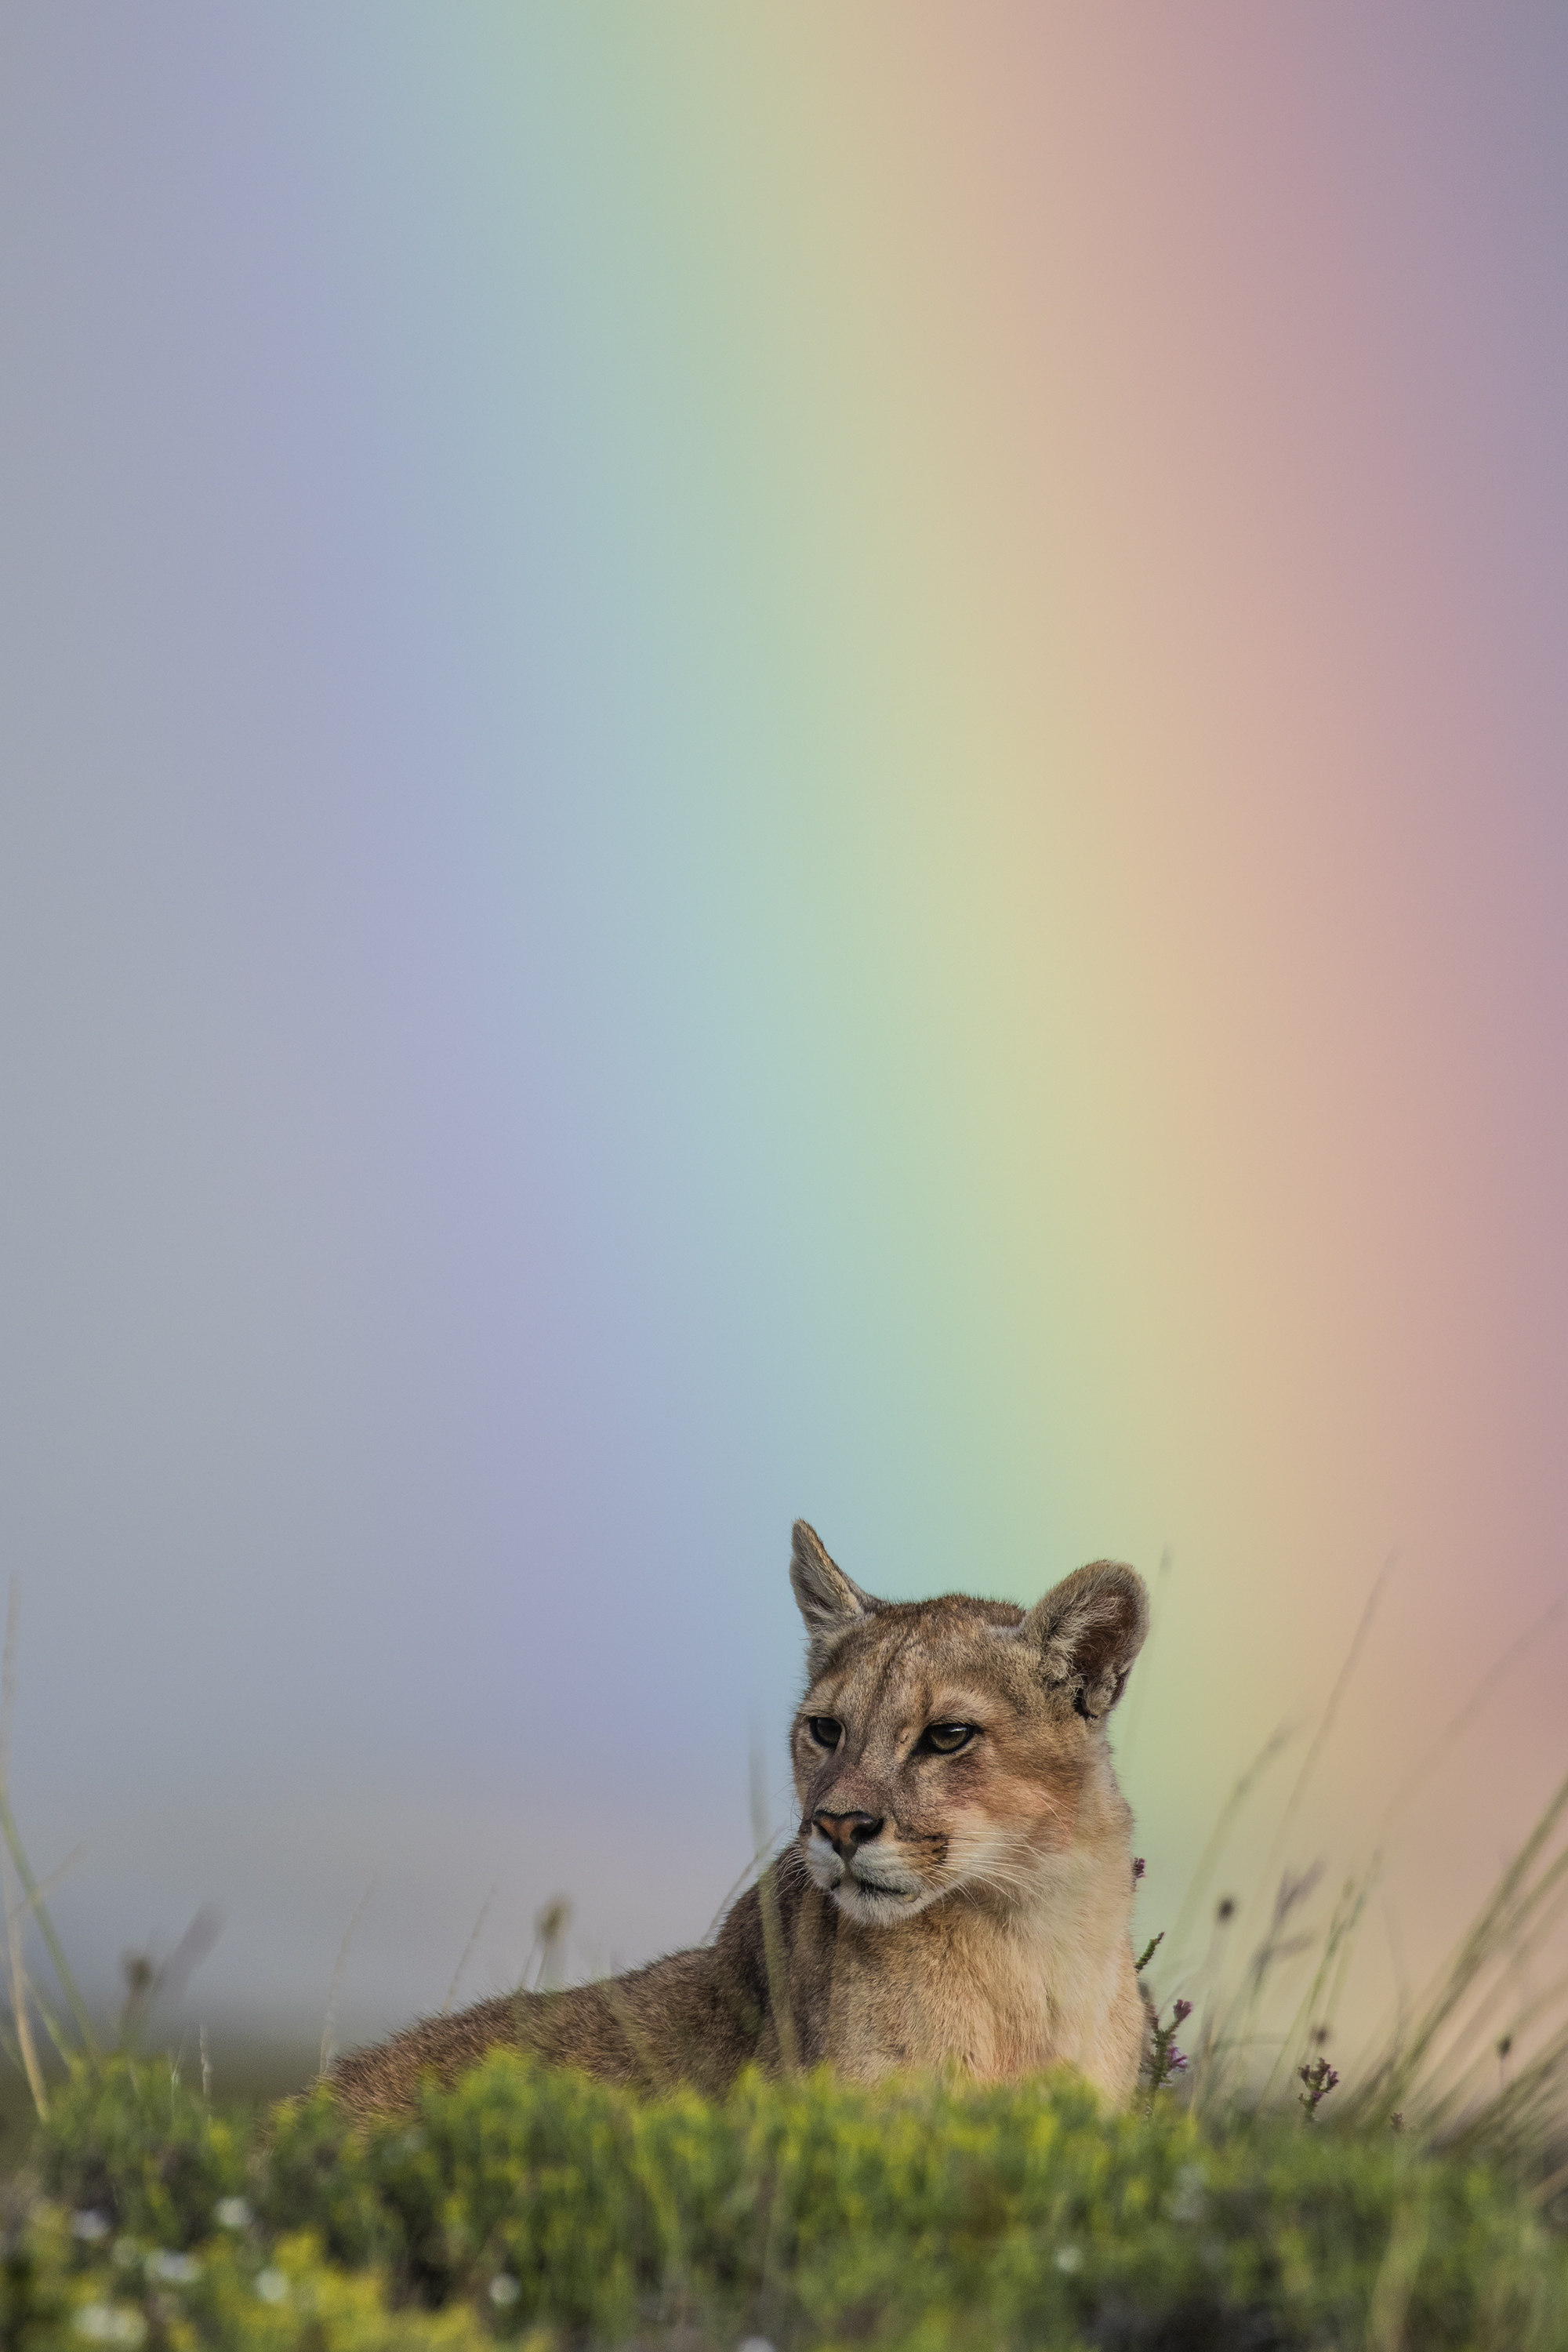 Rainbow over puma